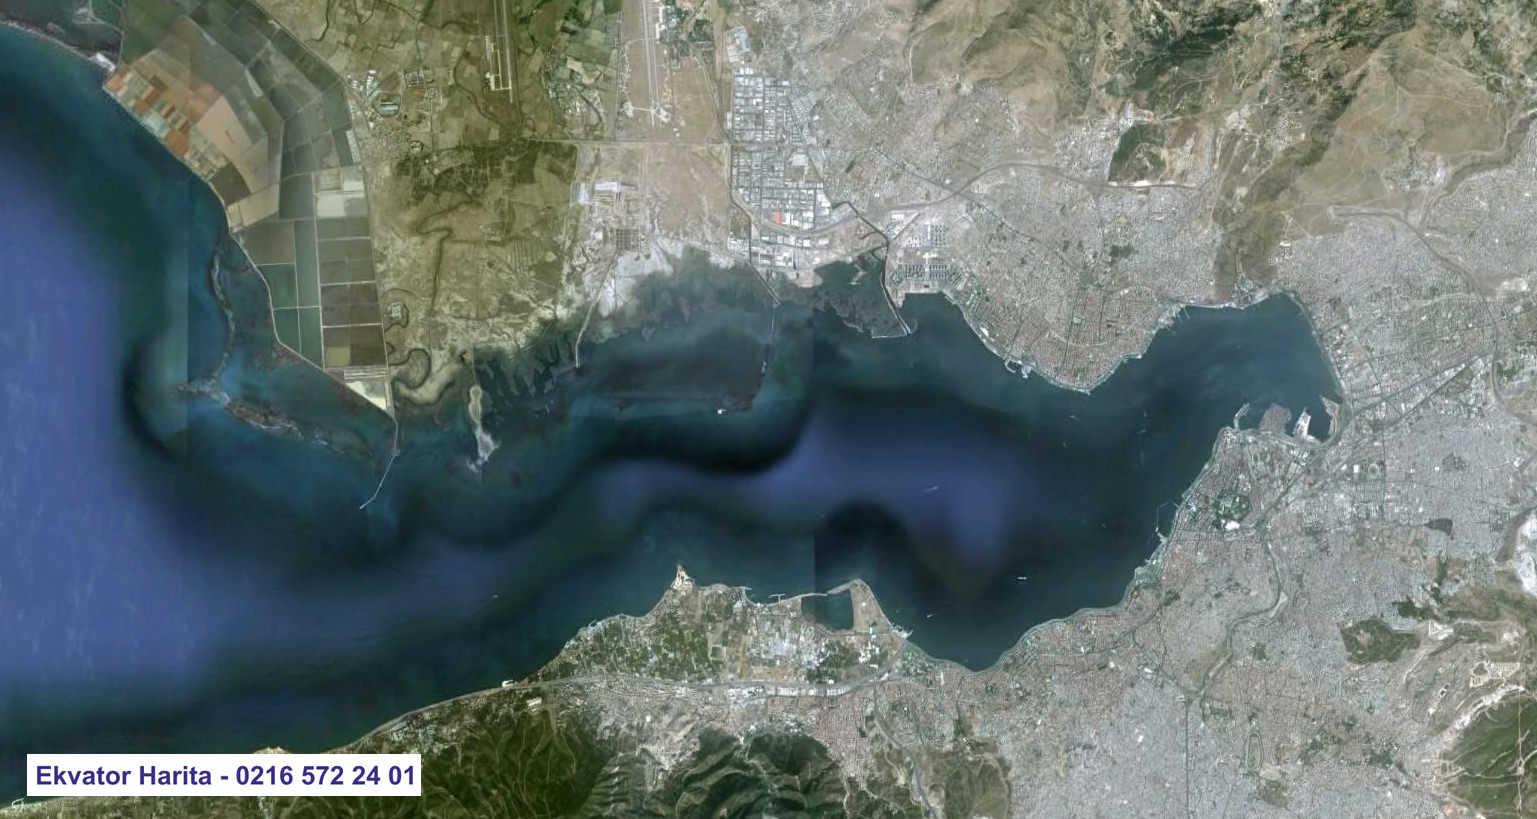 İzmir Uydu Haritası Örnek Fotoğrafı